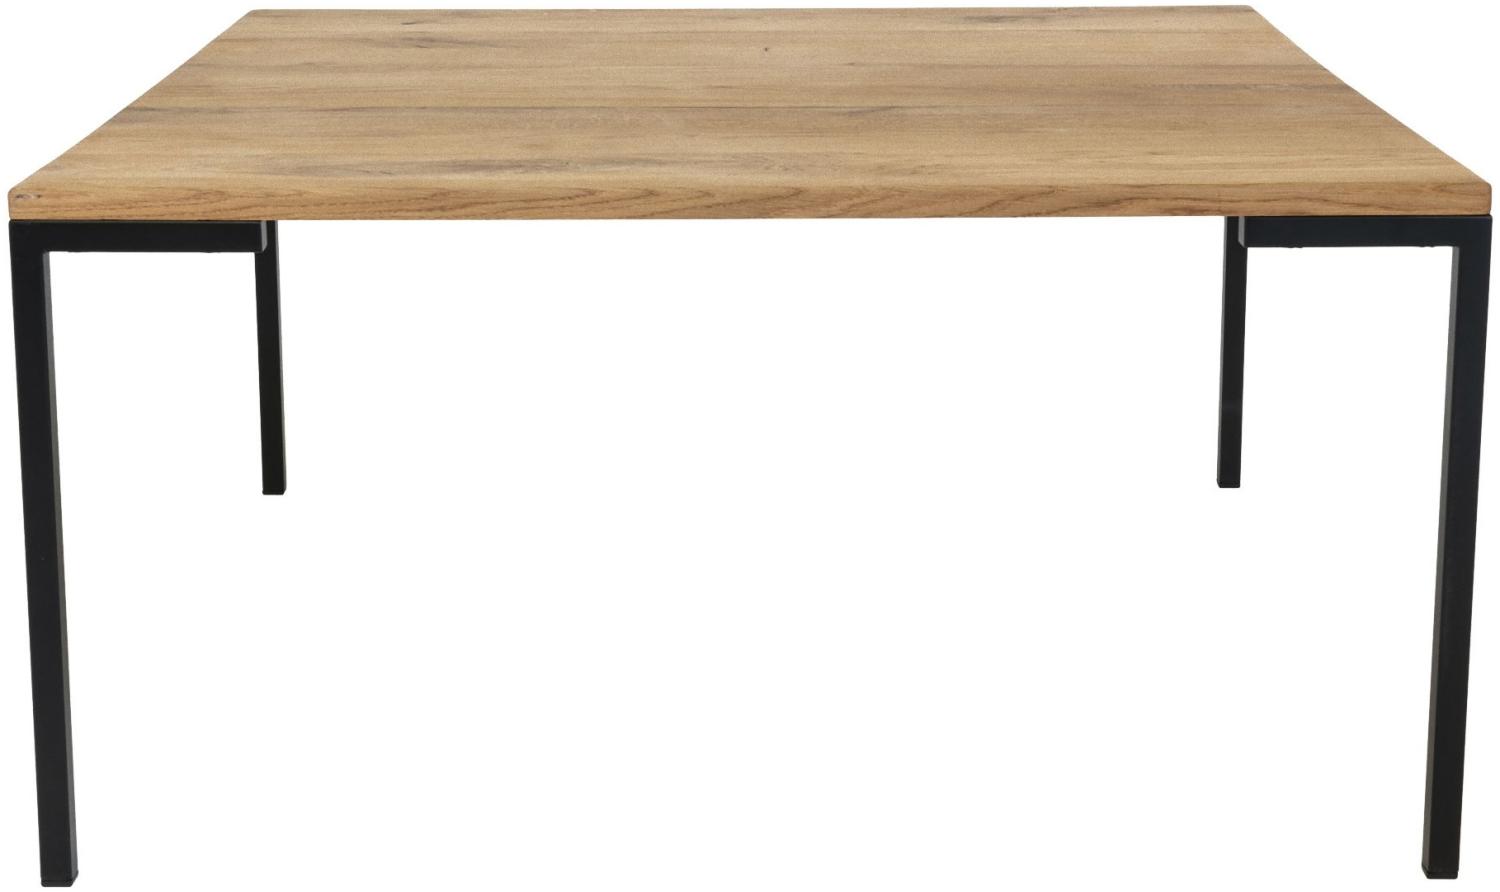 Couchtisch Lugano 90x90 Eiche Holz Wohnzimmer Tisch Sofatisch Beistelltisch Bild 1